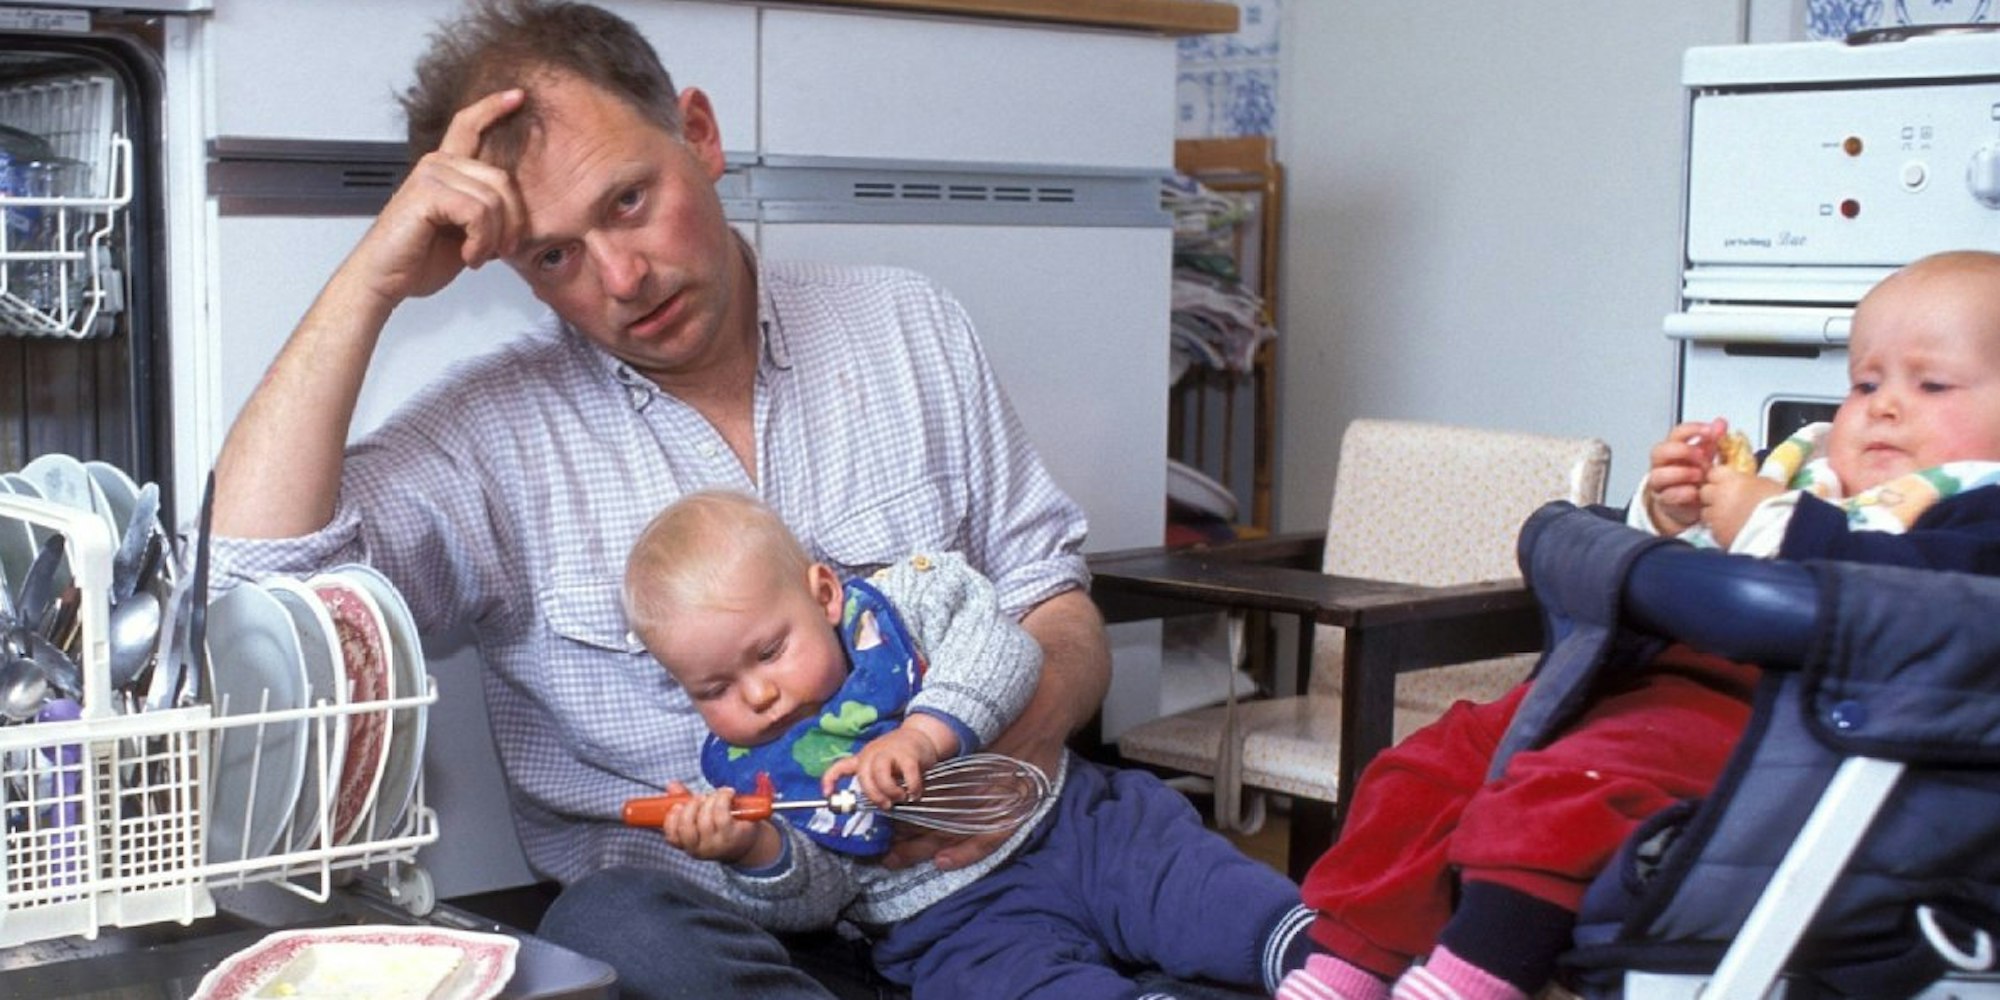 Zwischen Beruf und Kindern immer unter Strom und dauernd erschöpft: Auch Väter leiden unter dem Vereinabarkeitsproblem.